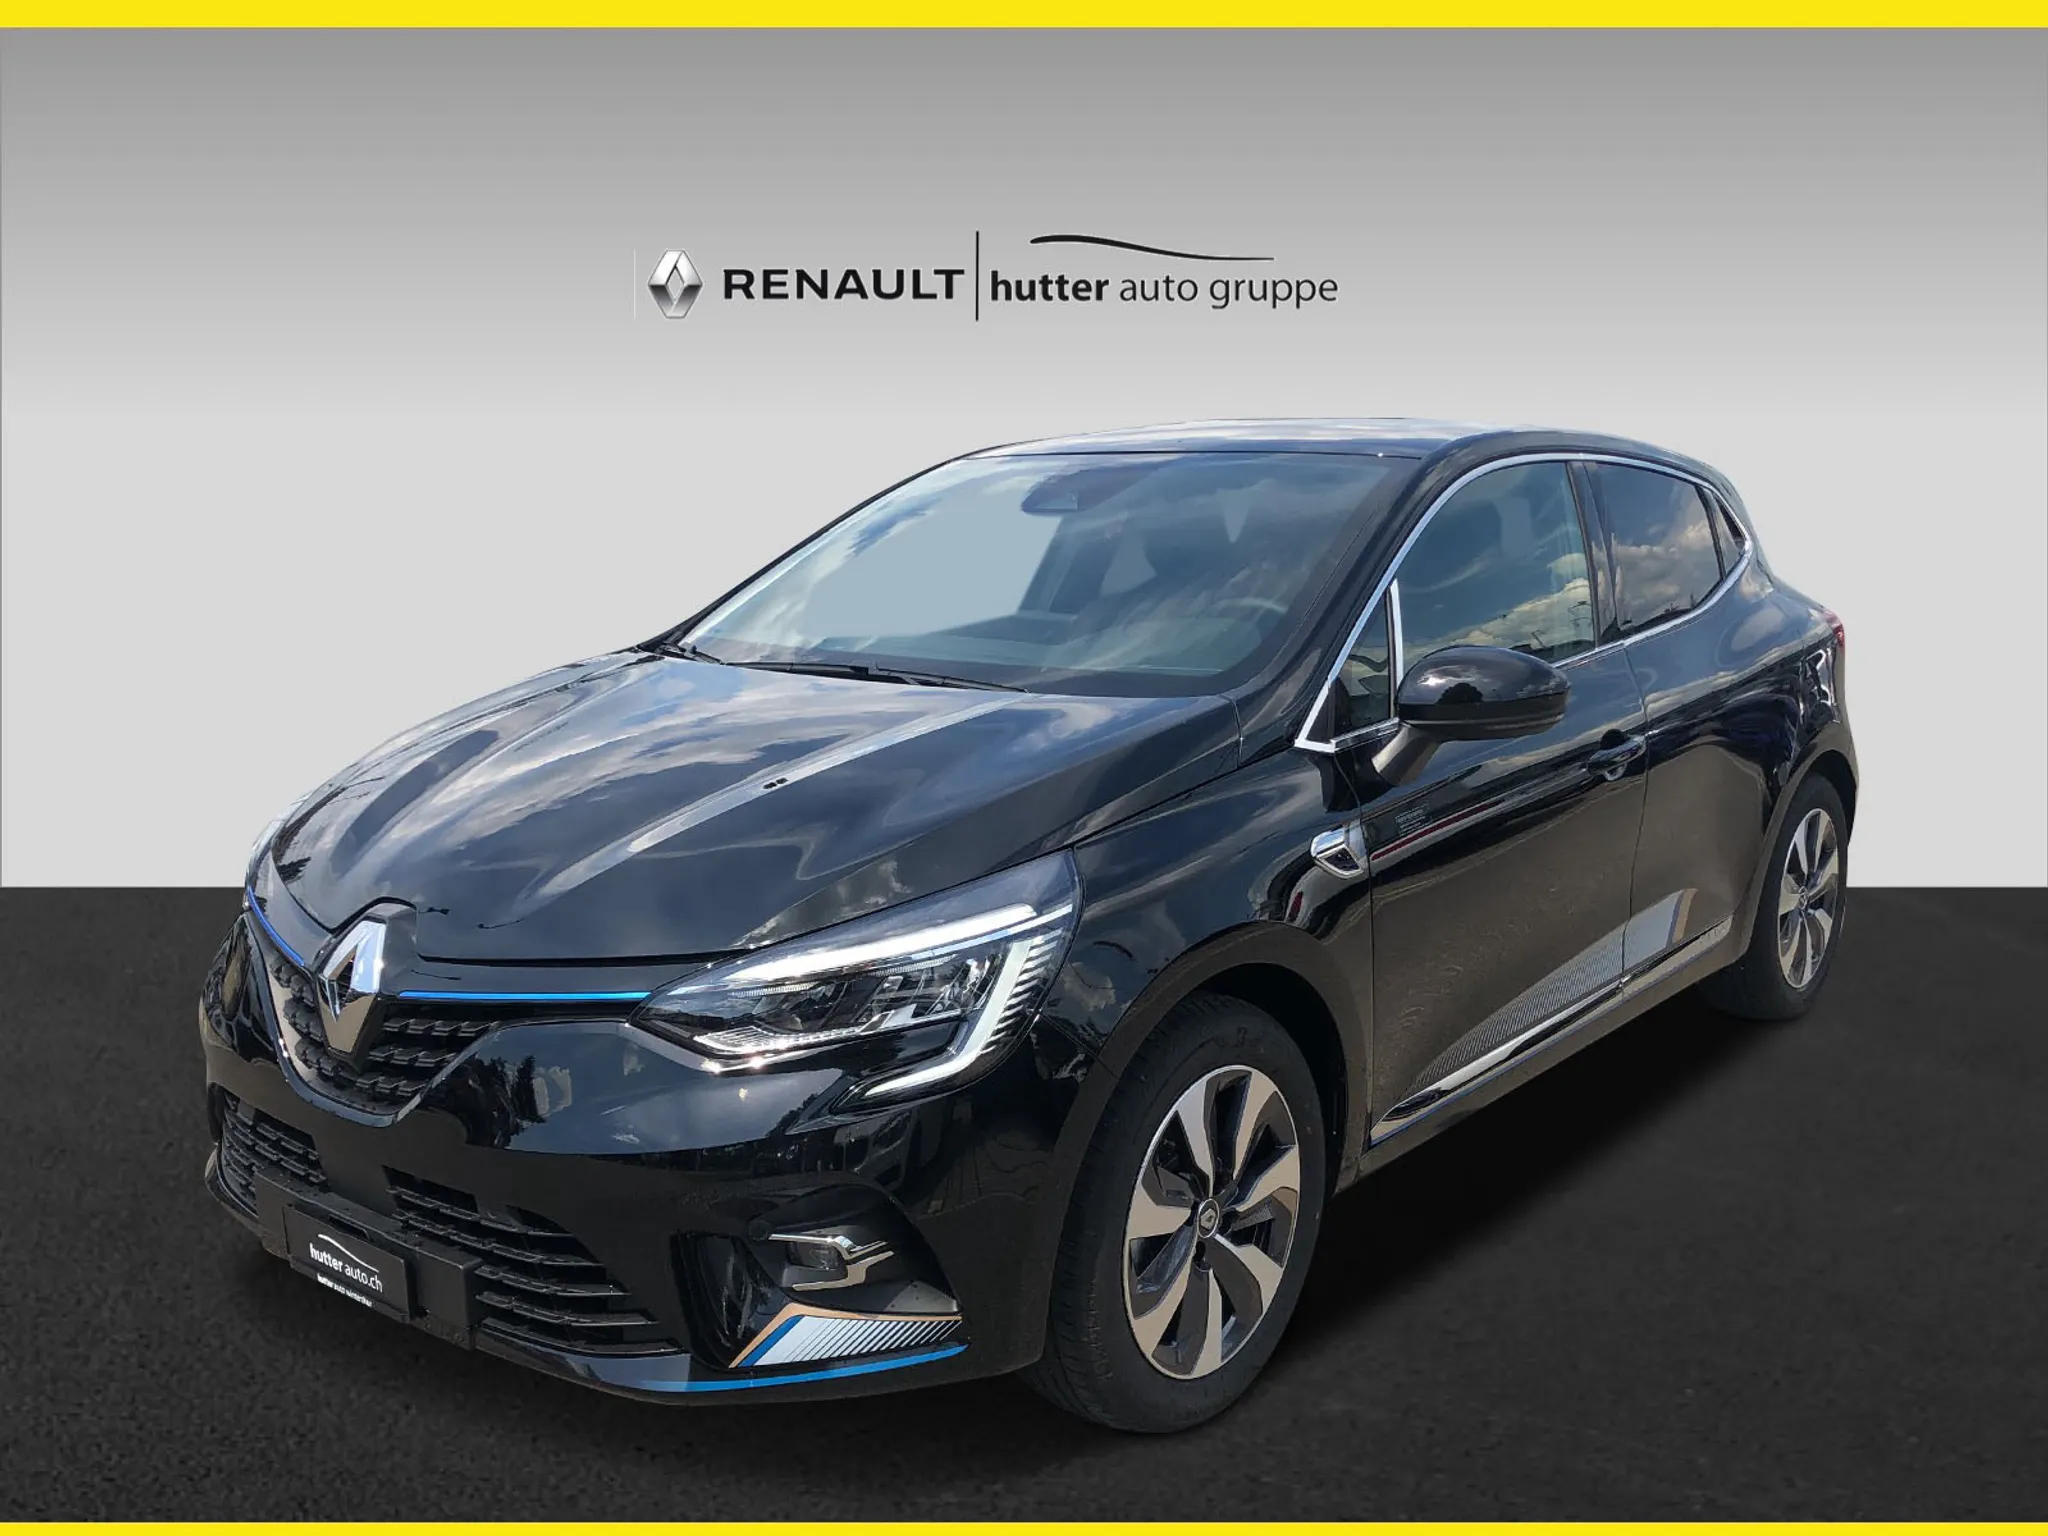 RENAULT-Clio-car-image